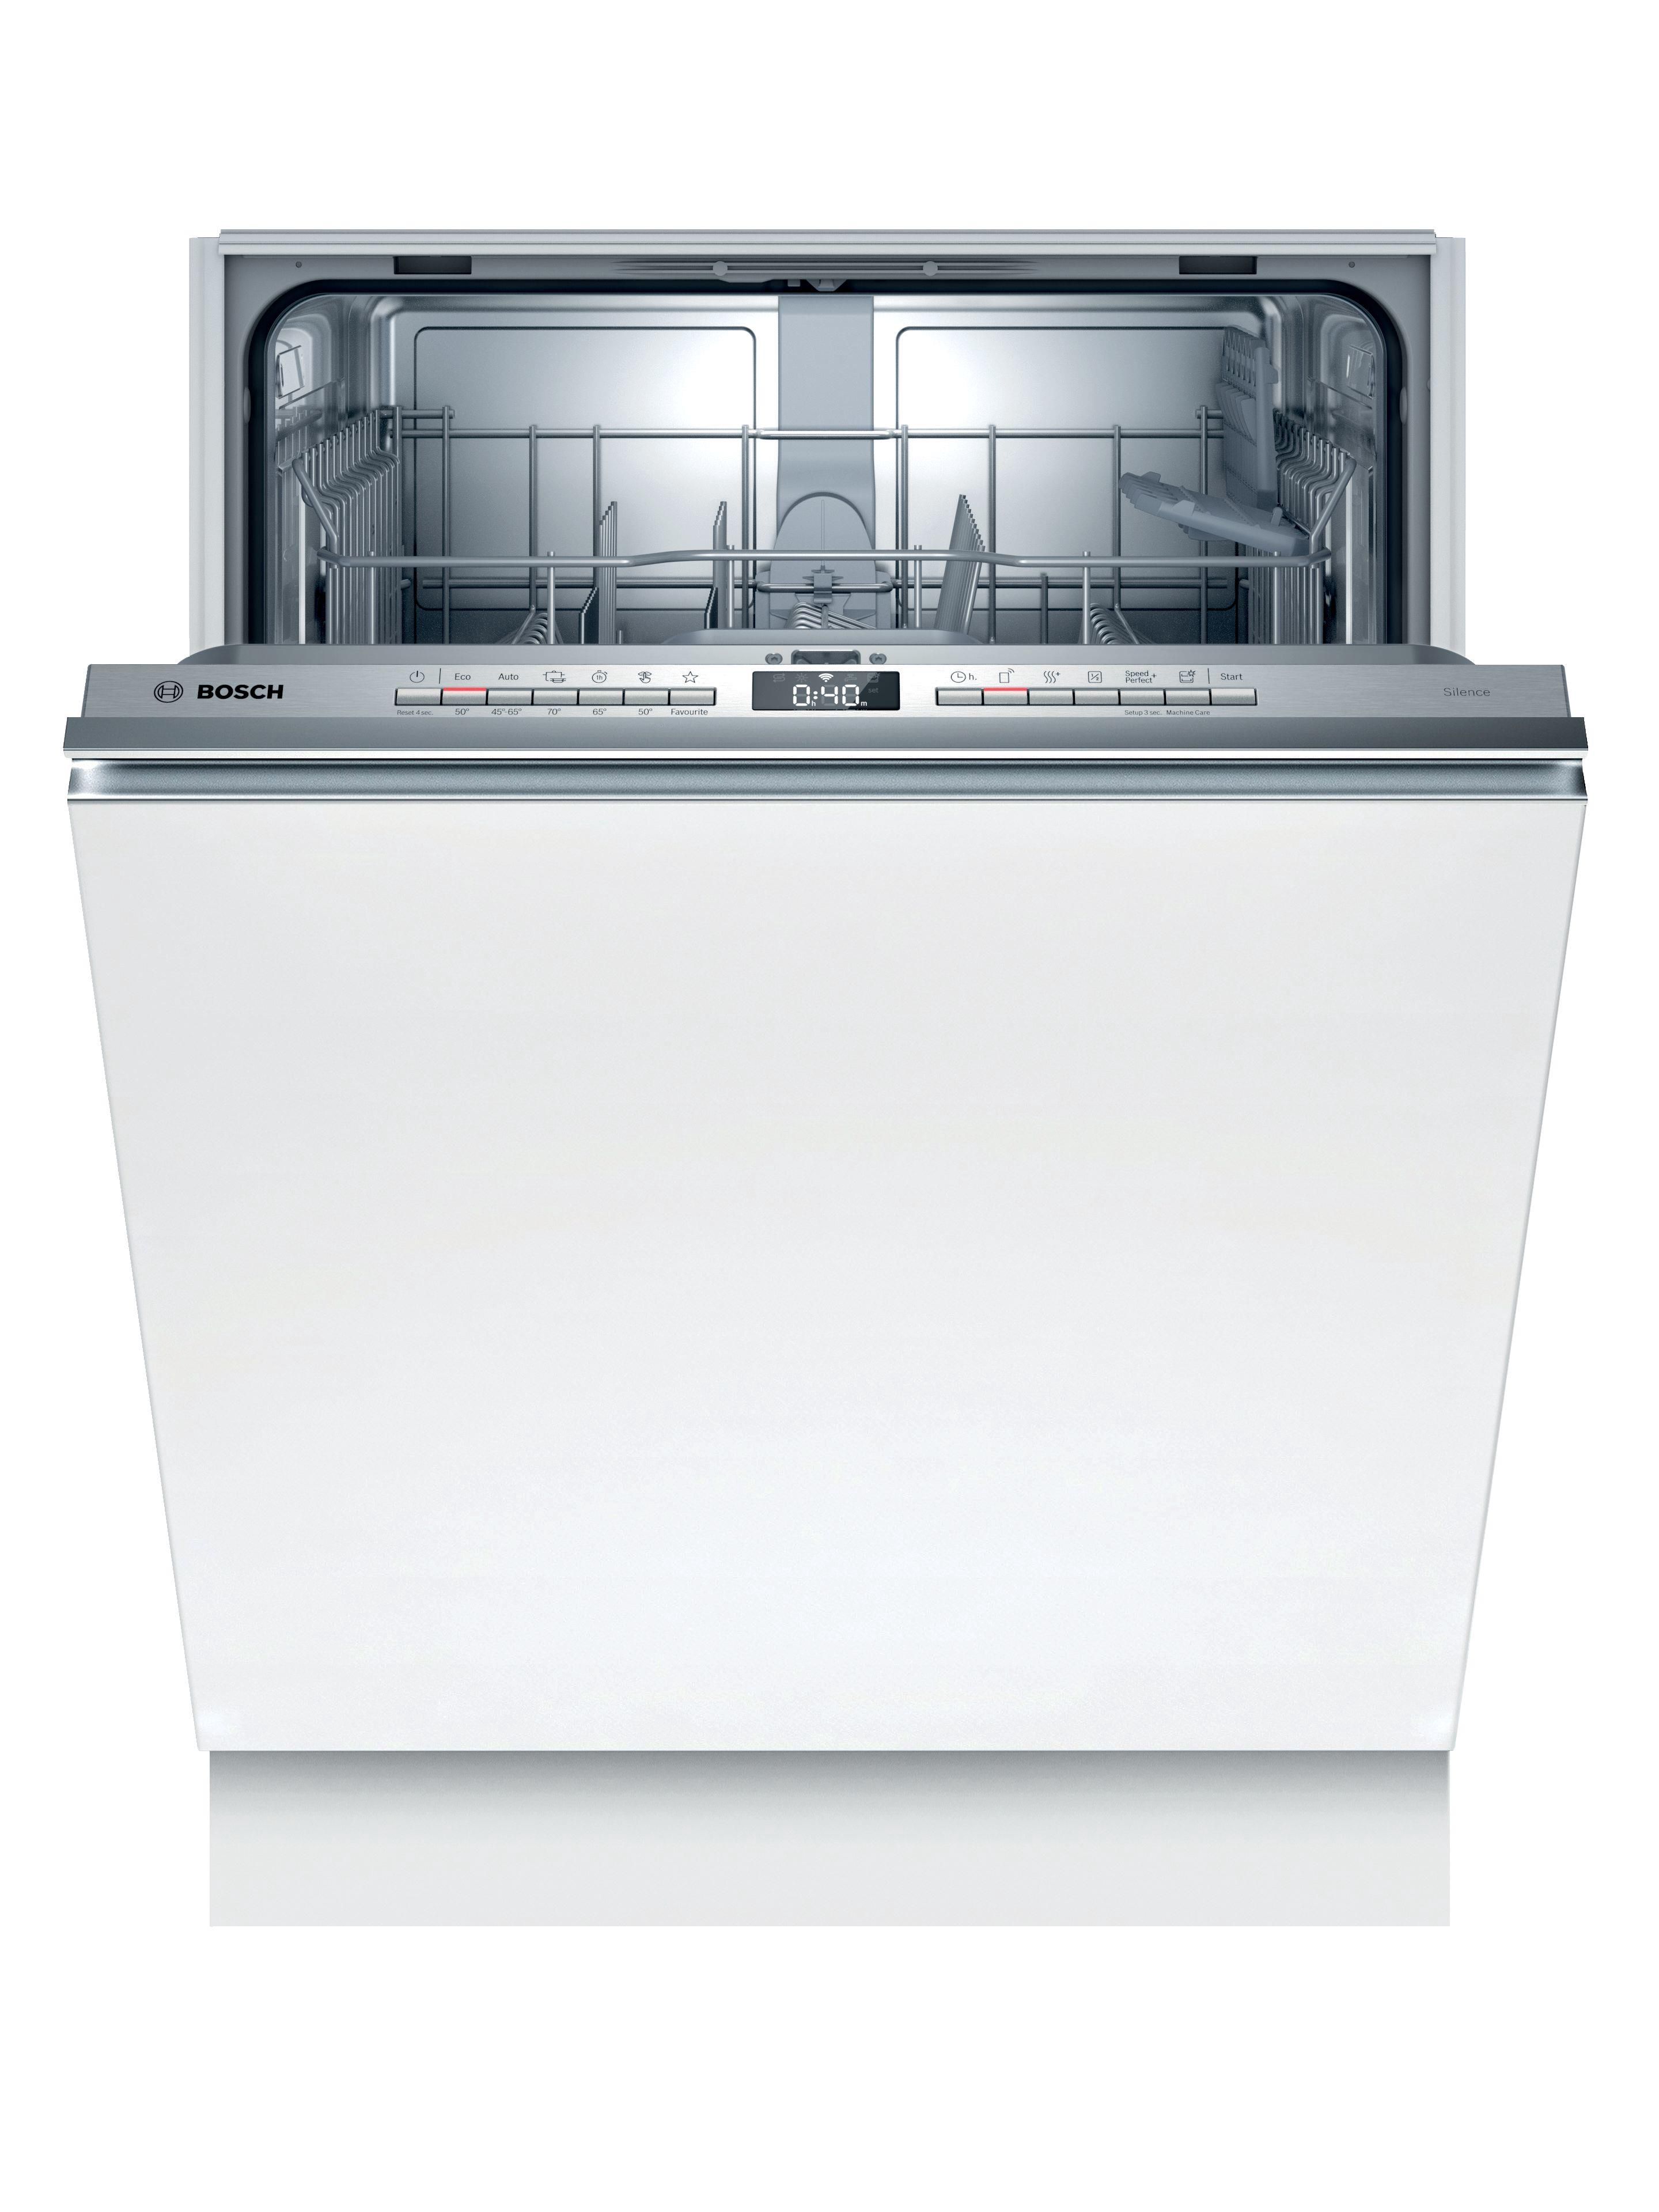 Посудомойки 45 встроенная спб. Bosch spv6hmx1mr. Встраиваемая посудомоечная машина Bosch spv2ikx10e. Посудомоечная машина Bosch spv2imy2er. Встраиваемая посудомоечная машина 60 см Bosch serie|4 sgv4hmx3fr.